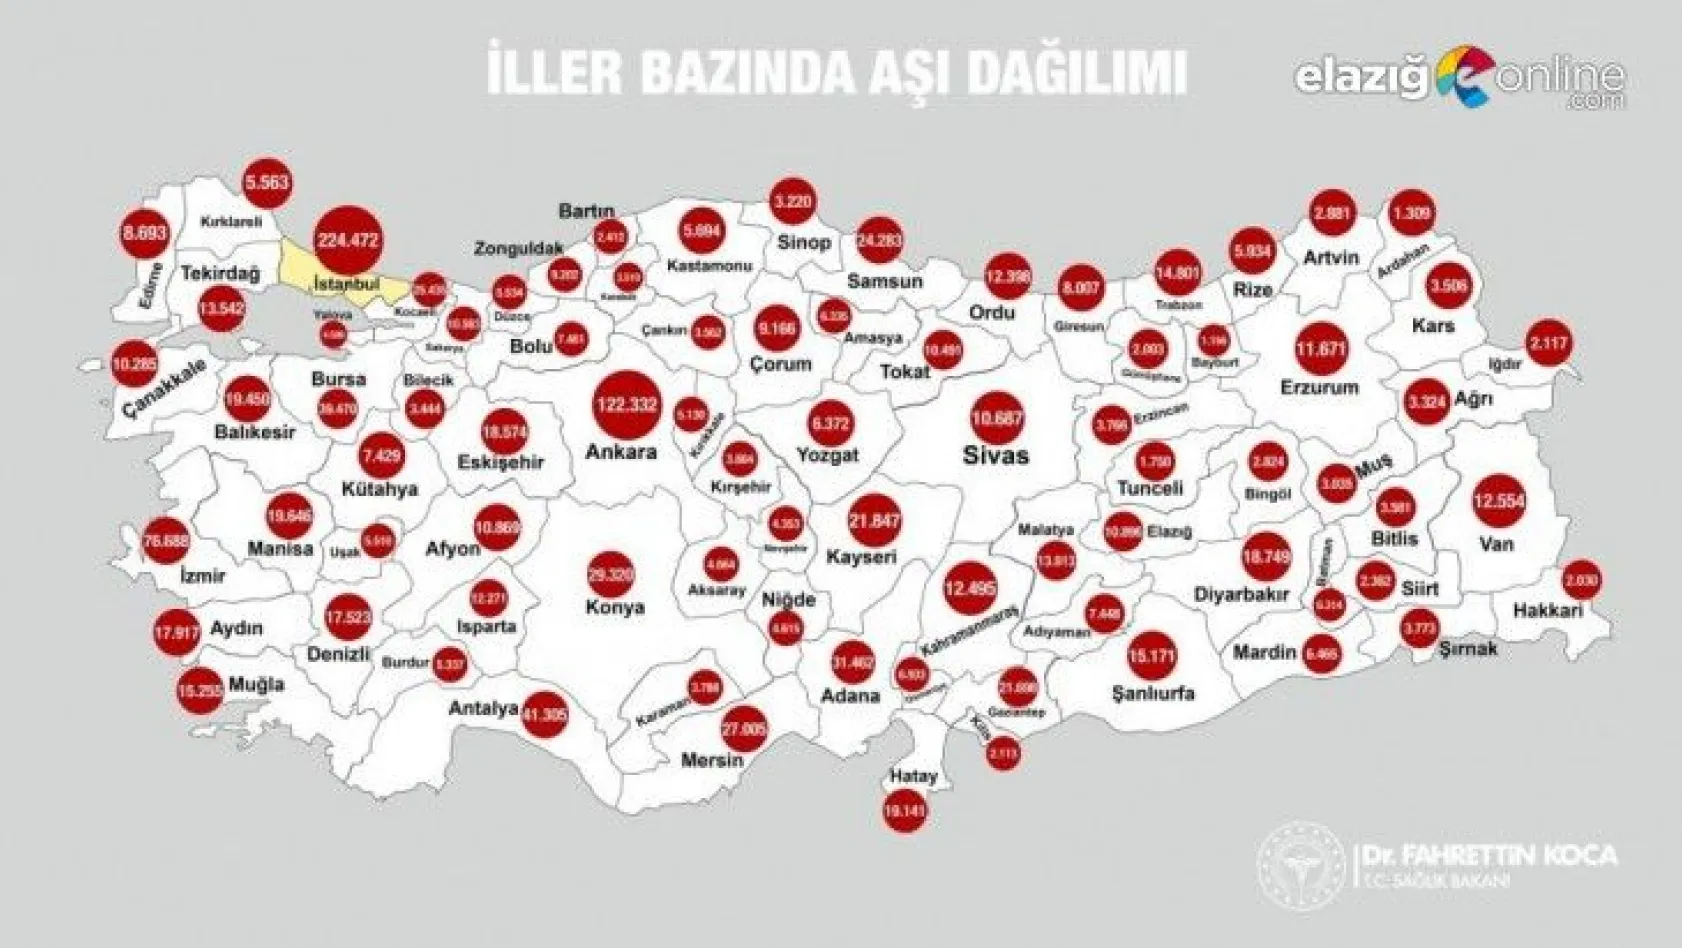 Sağlık Bakanı Koca: Türkiye'de iller bazında aşı dağılımını görebilirsiniz